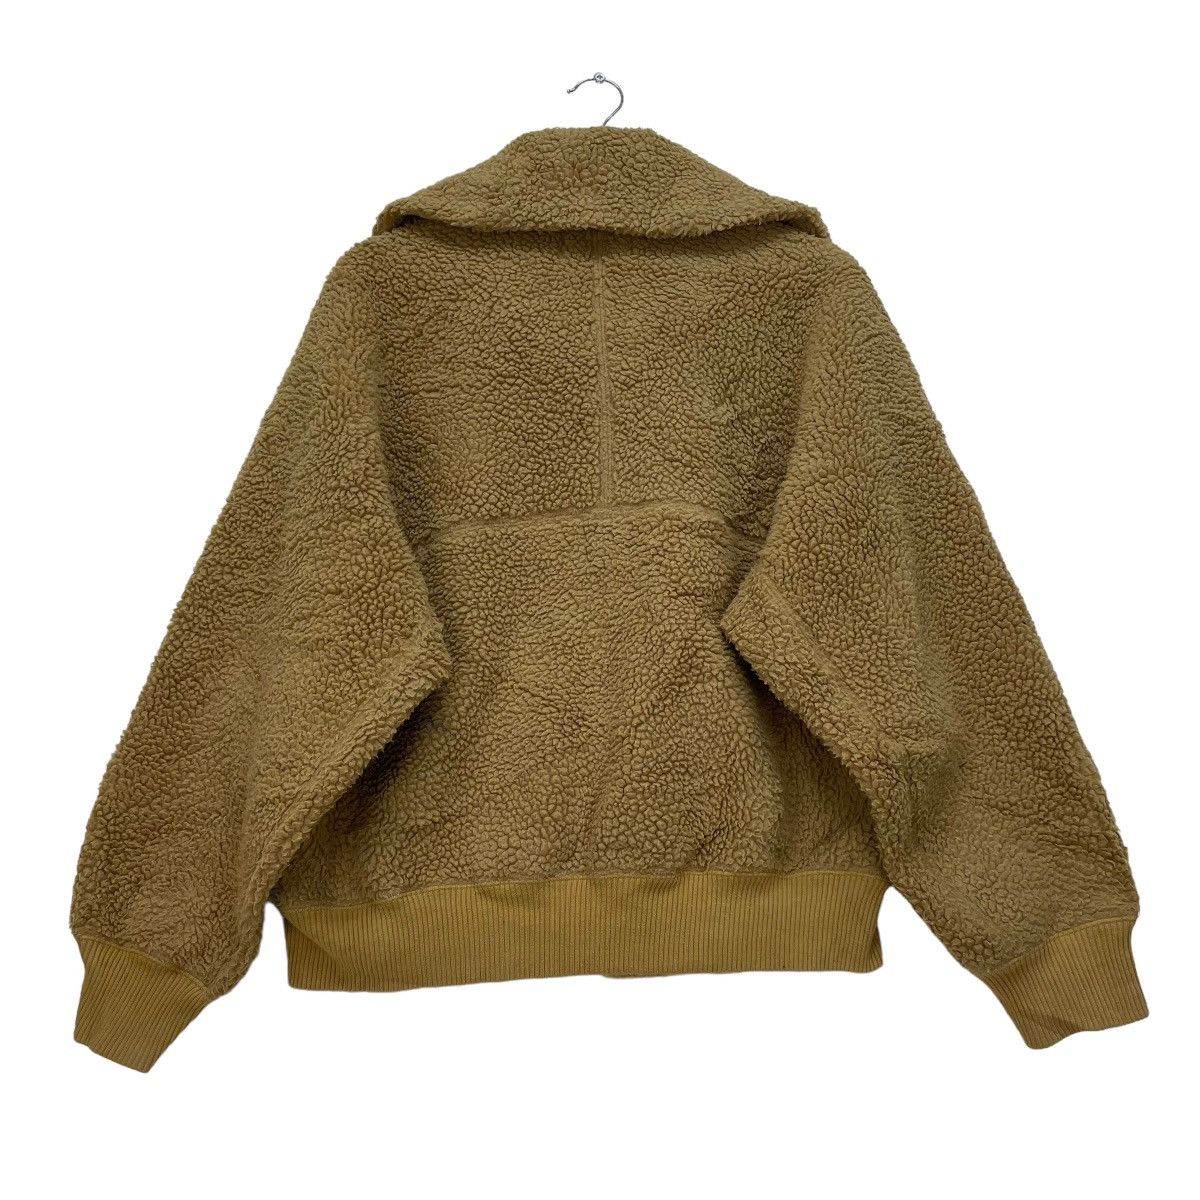 Japanese Brand Uniqlo X Lemaire Sherpa Jacket - 2